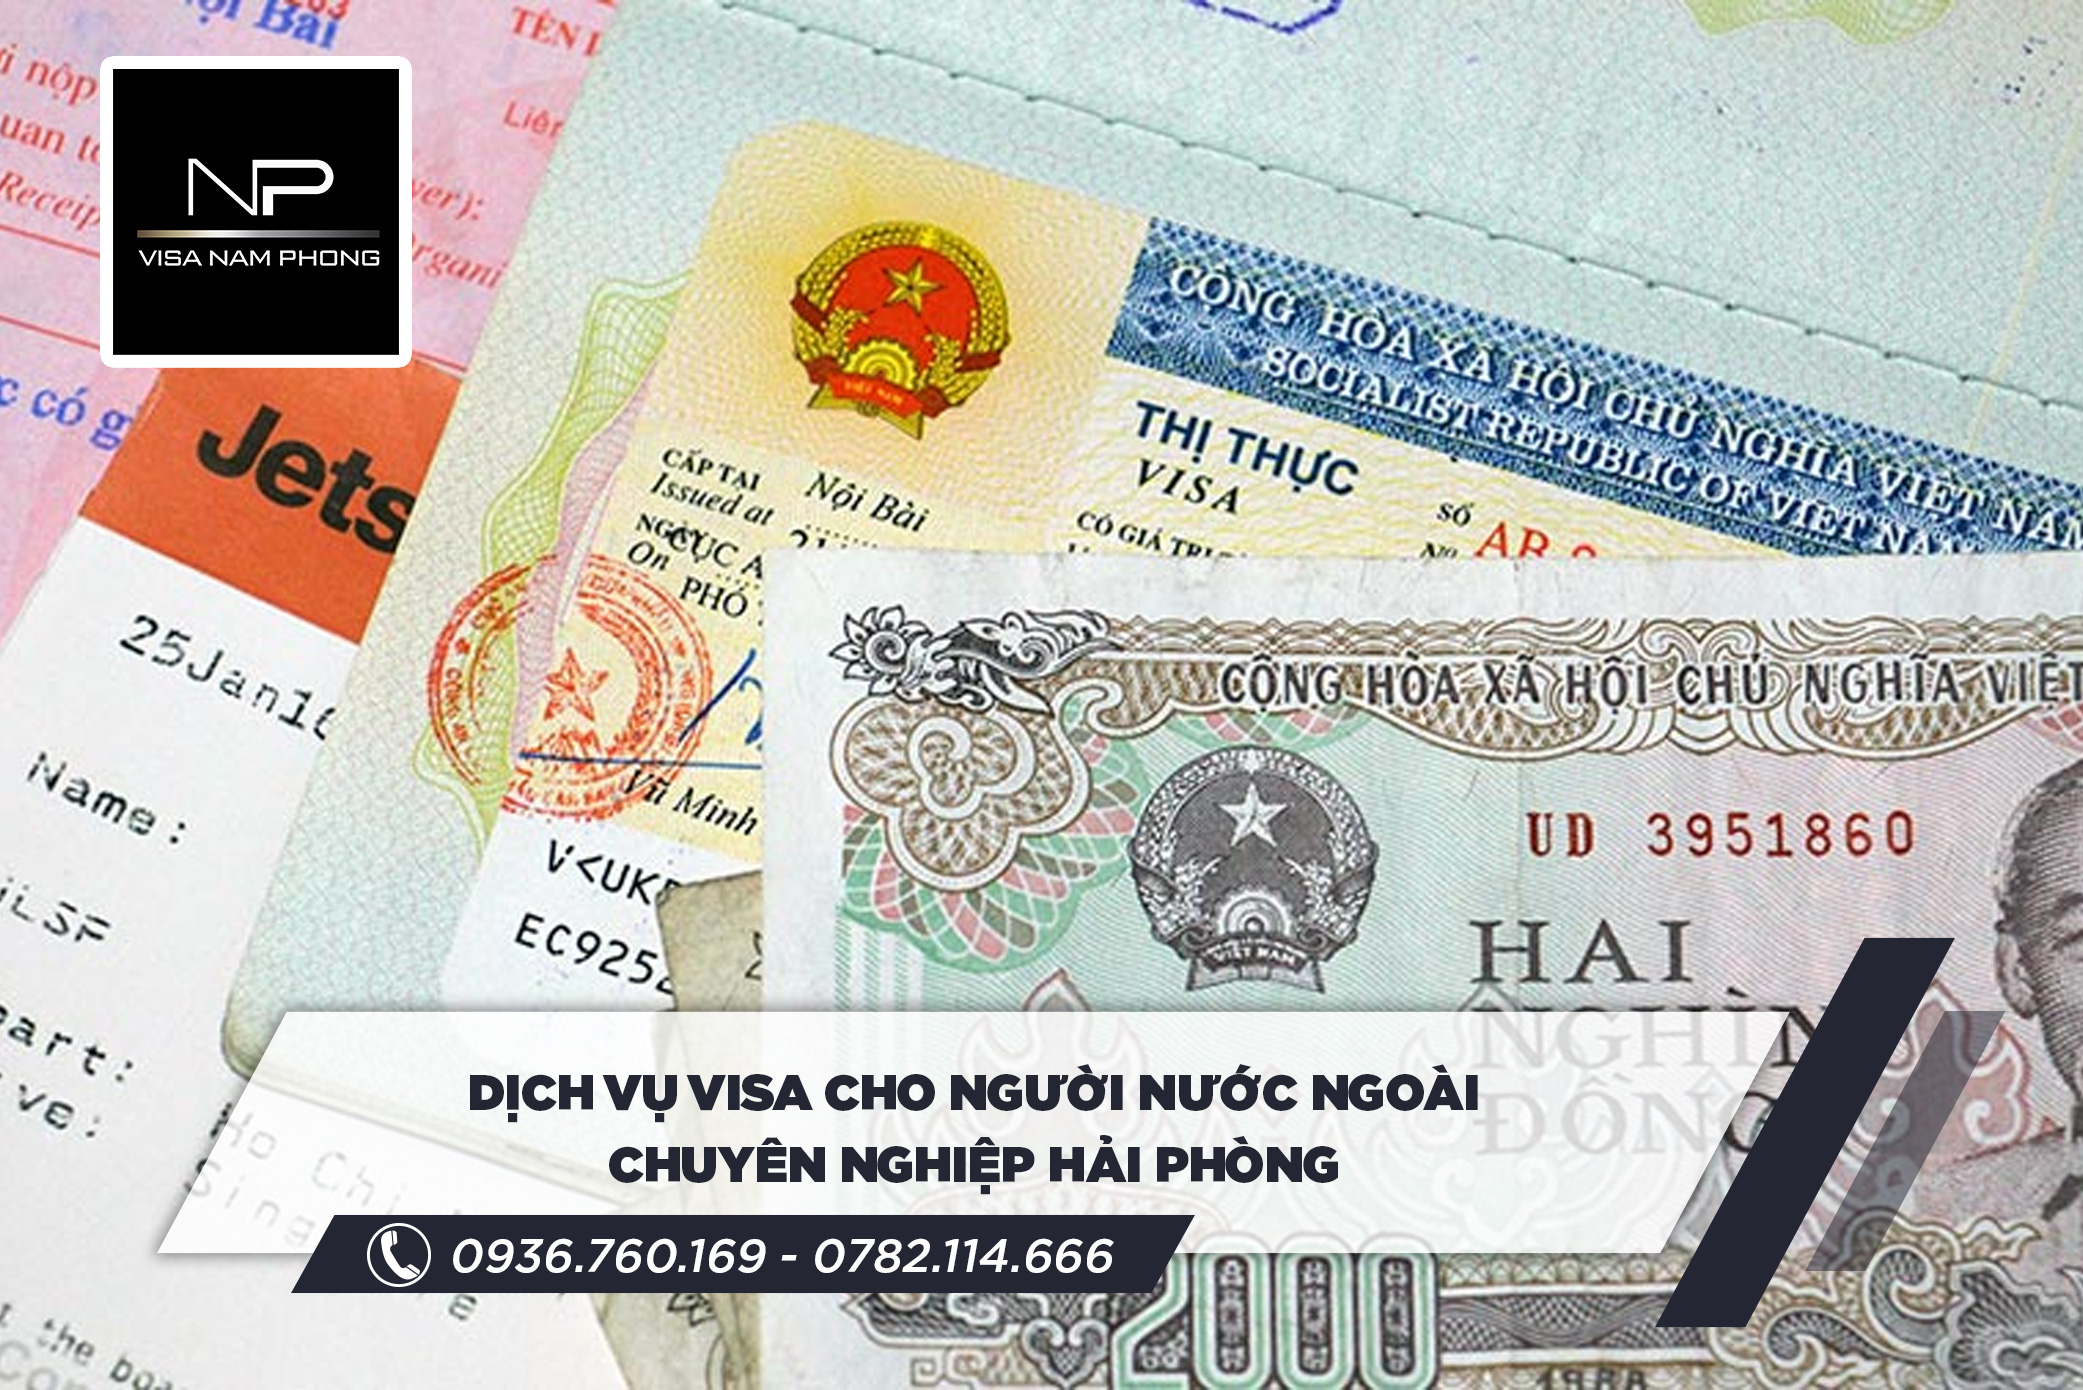 dịch vụ visa cho người nước ngoài chuyên nghiệp hải phòng